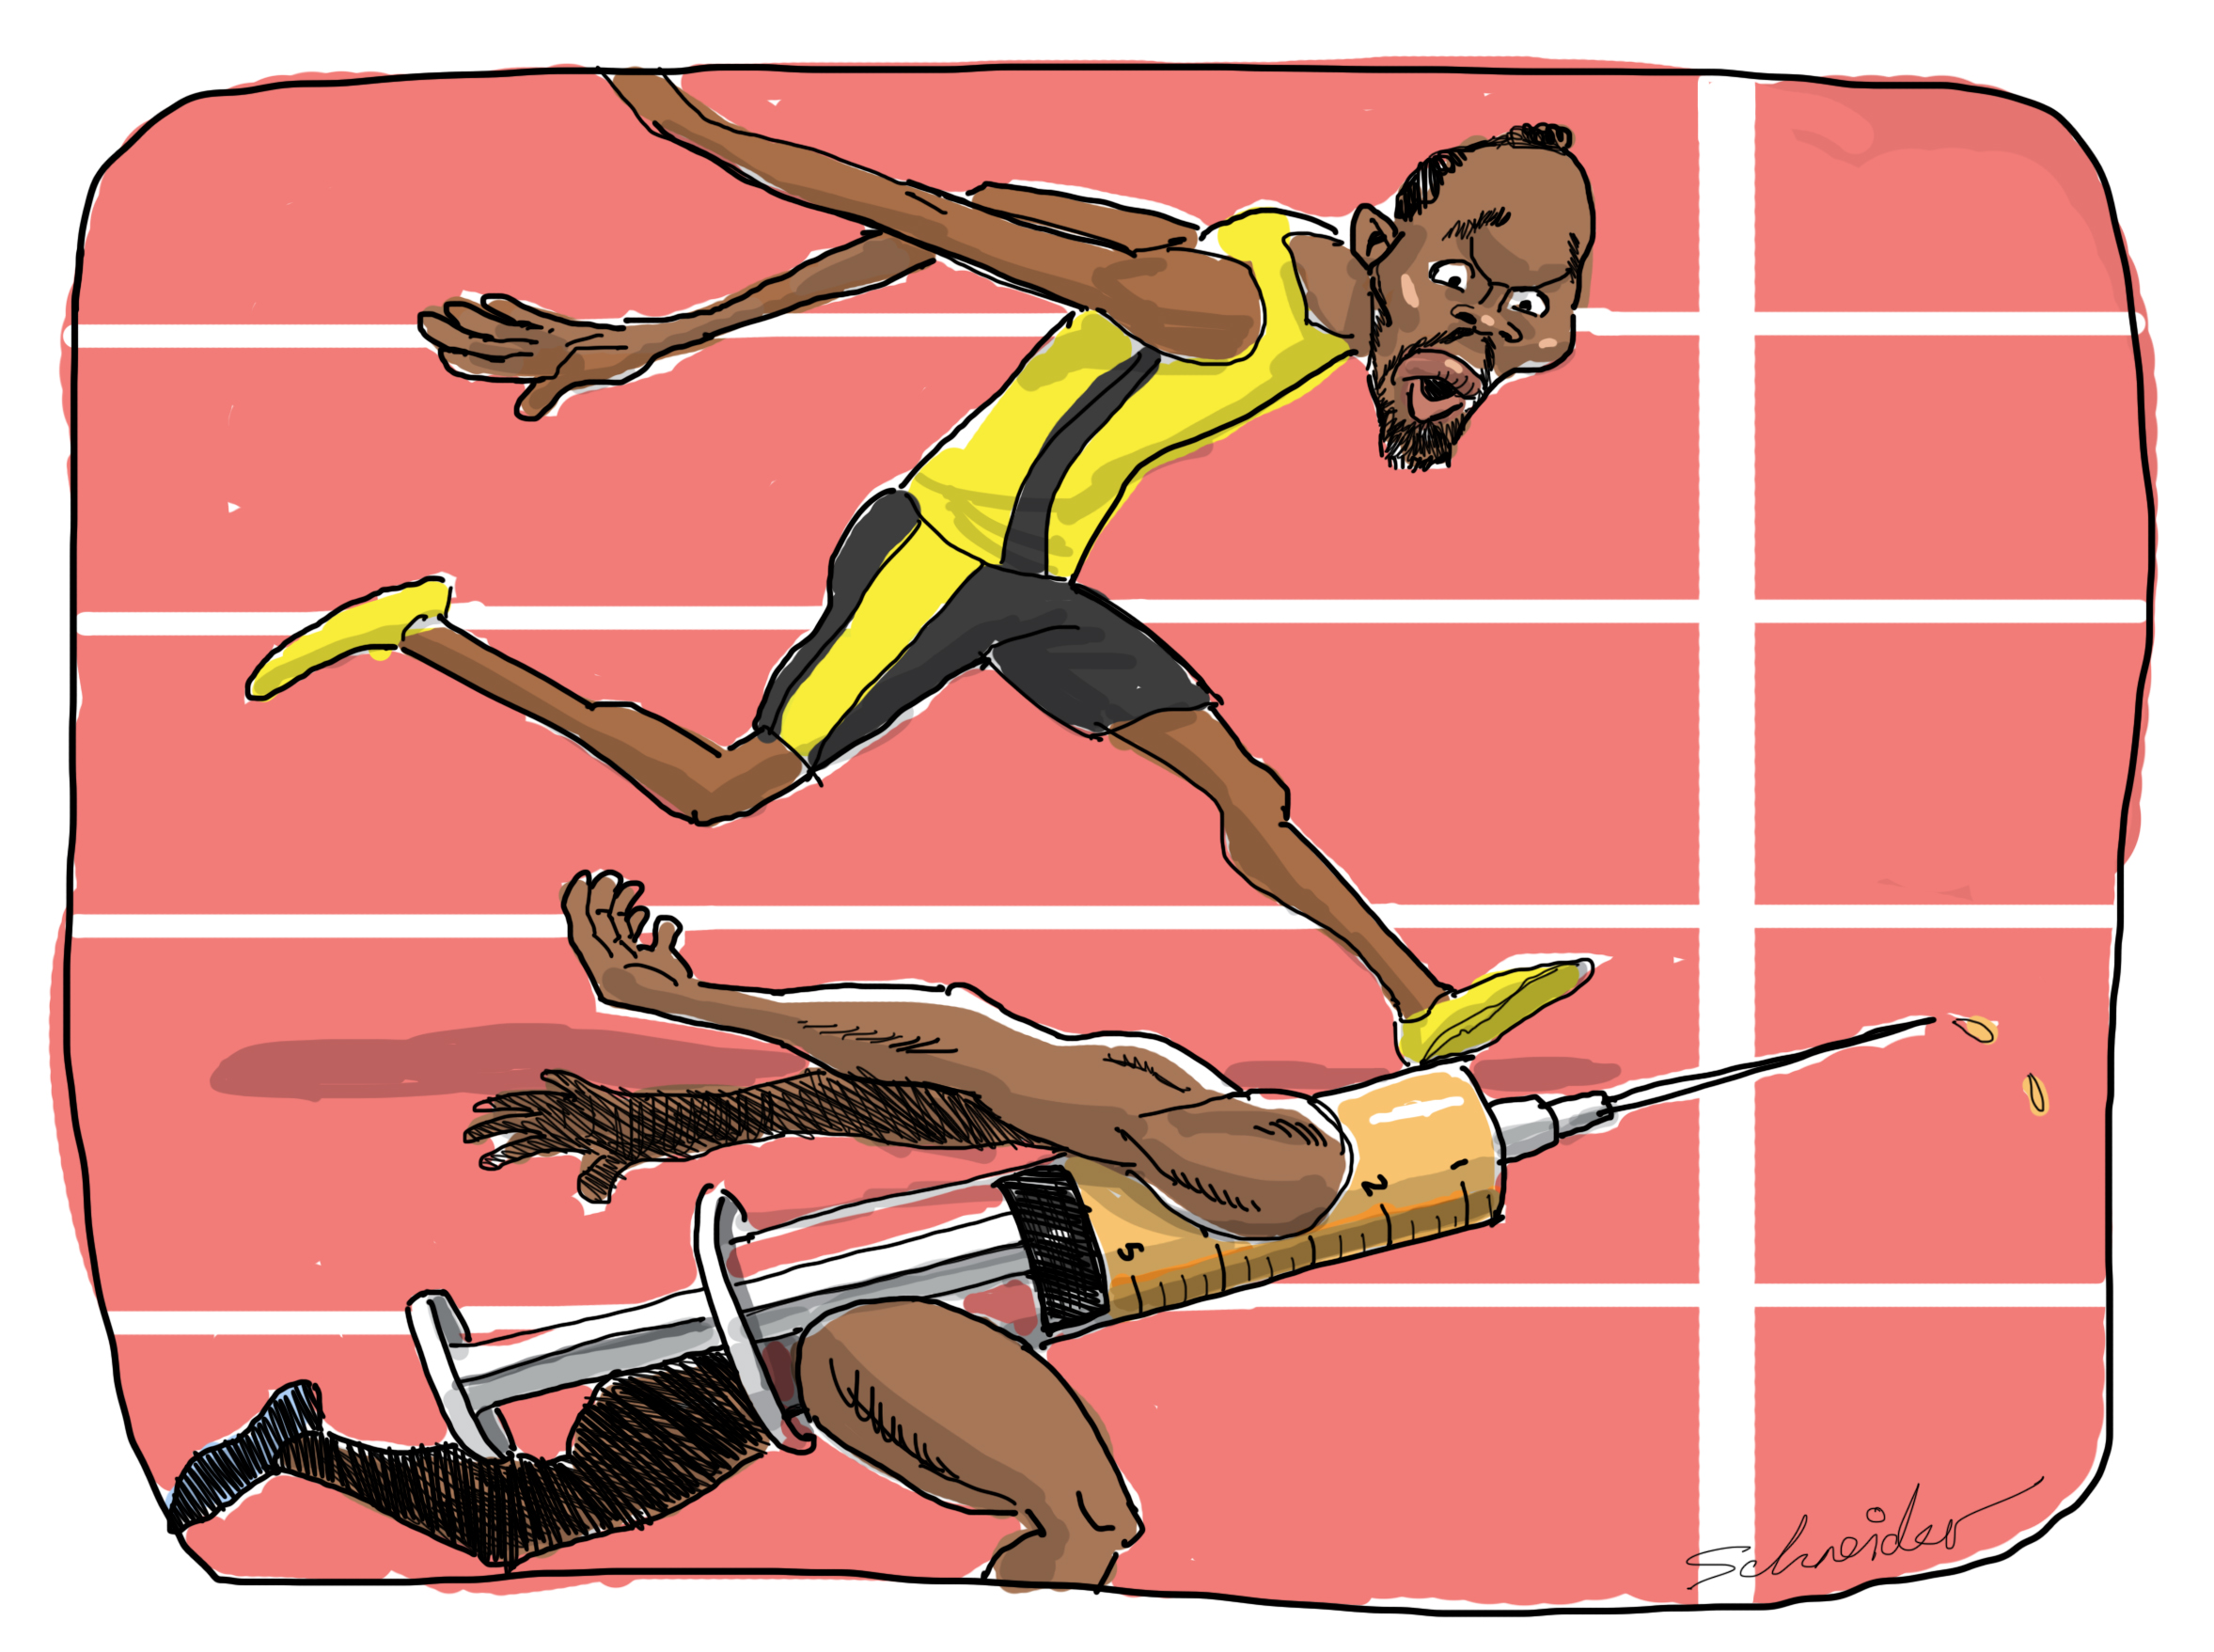 Schneiders take on Usain Bolt